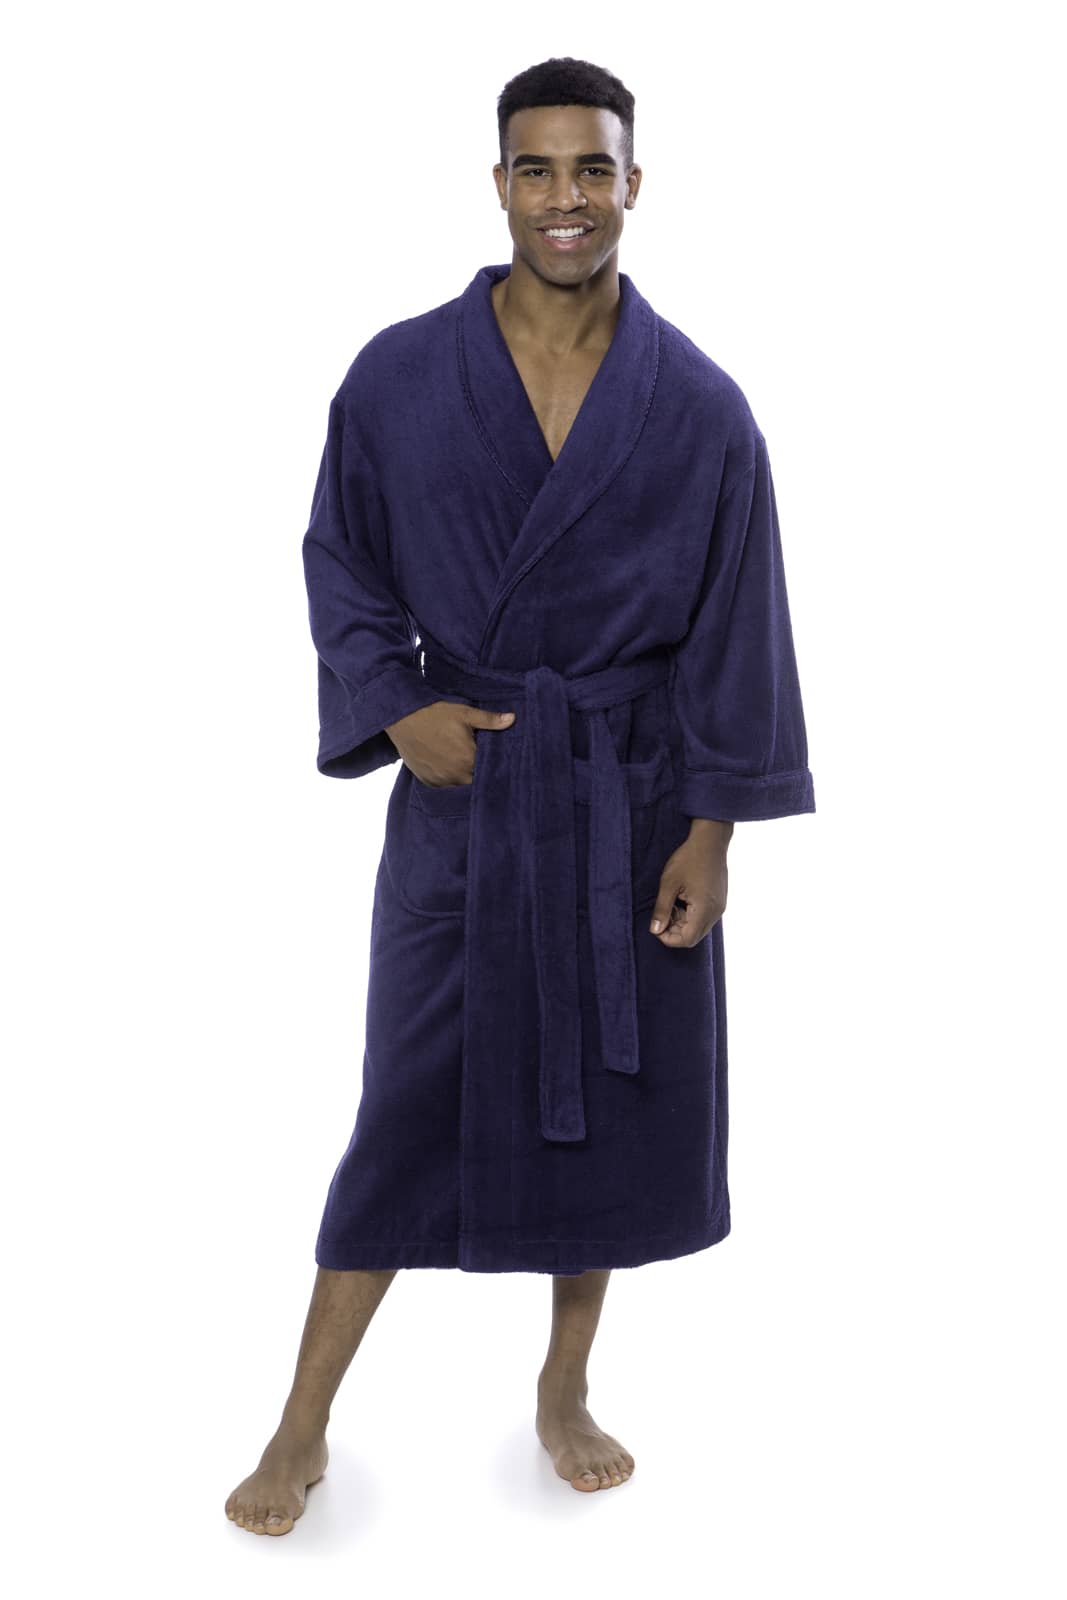 Bamboo Terry Cloth Robe Women's Fleece Bathrobe Soft Cozy Homewear